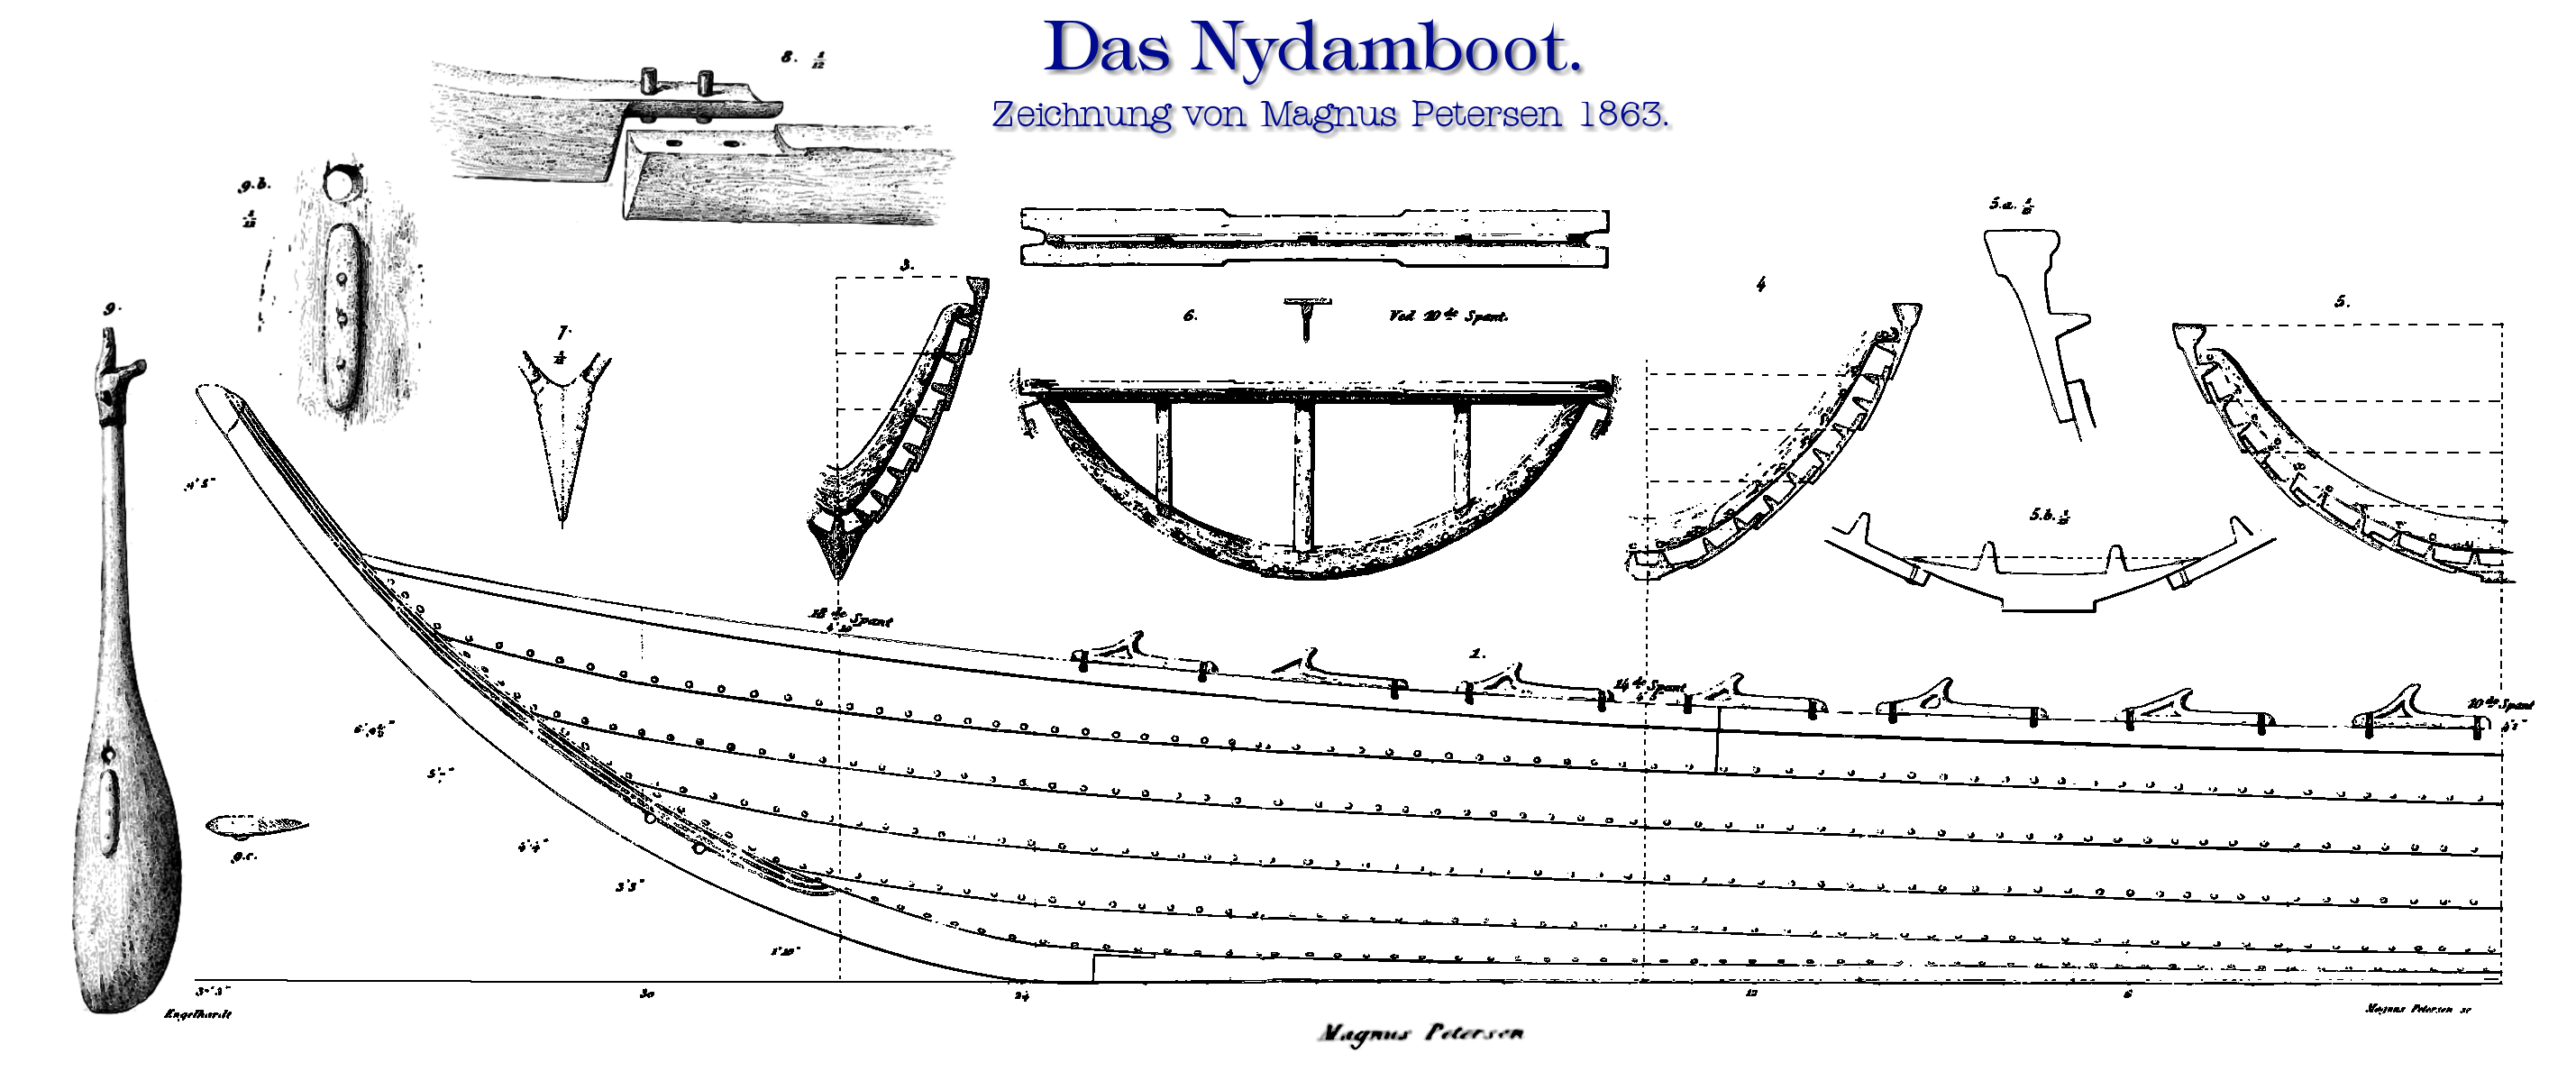 Nydamboot Schnittzeichnung Magnus Petersen 1863